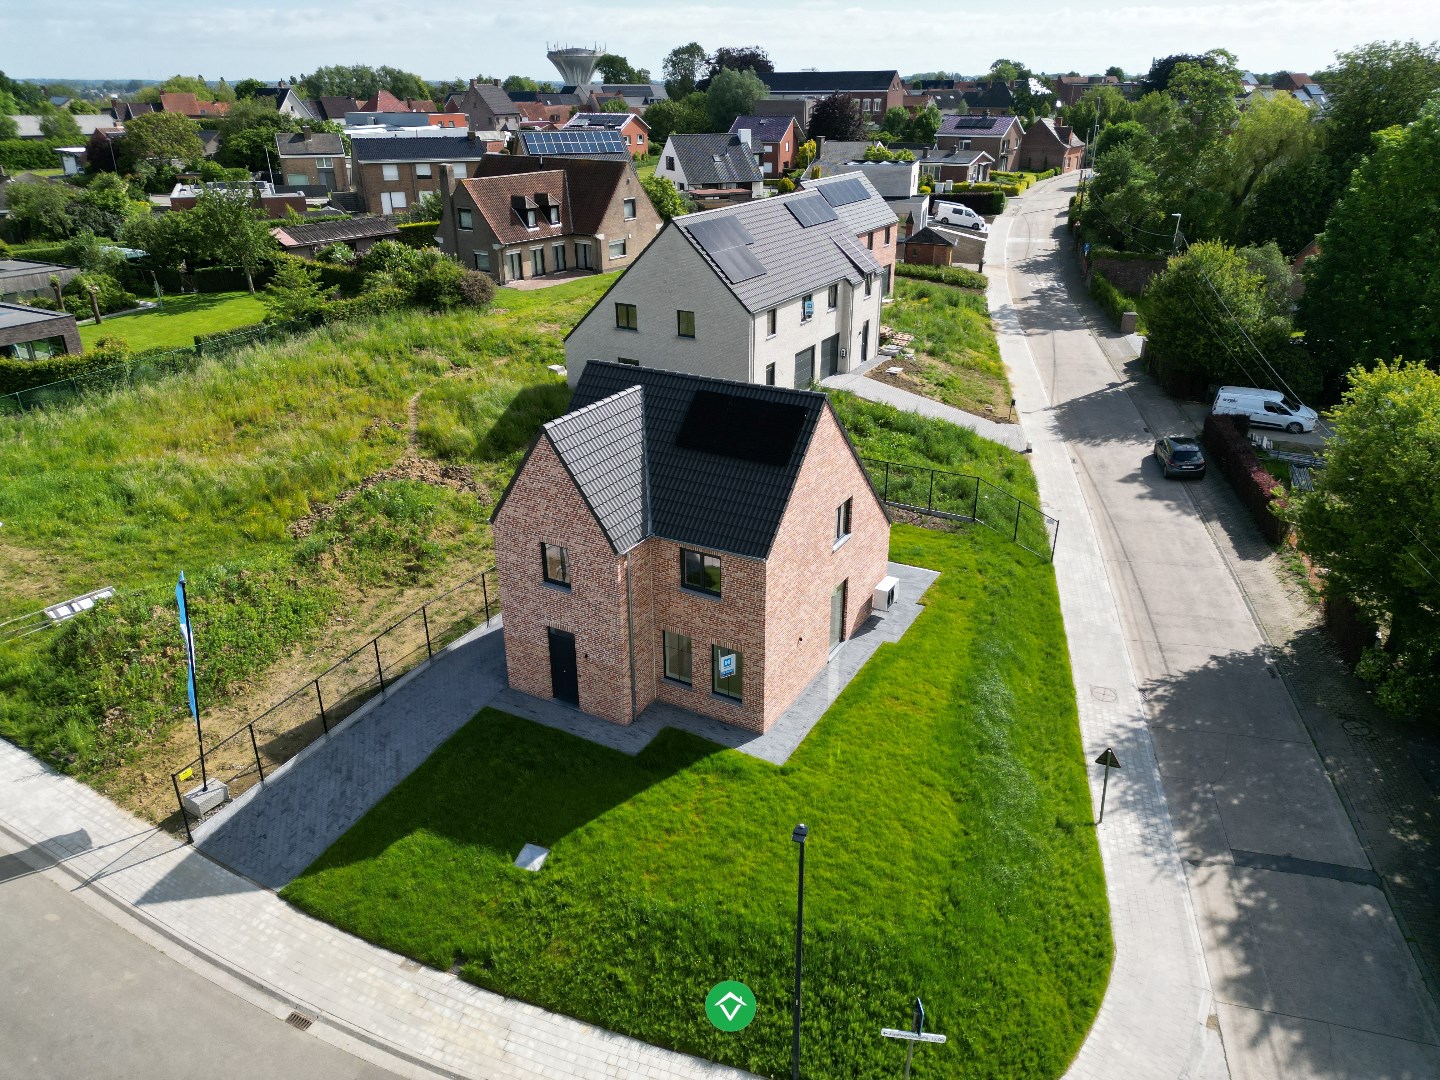 Instapklare, alleenstaande nieuwbouwwoning met 3 slaapkamers en tuin in rustige woonwijk te Hooglede foto 19